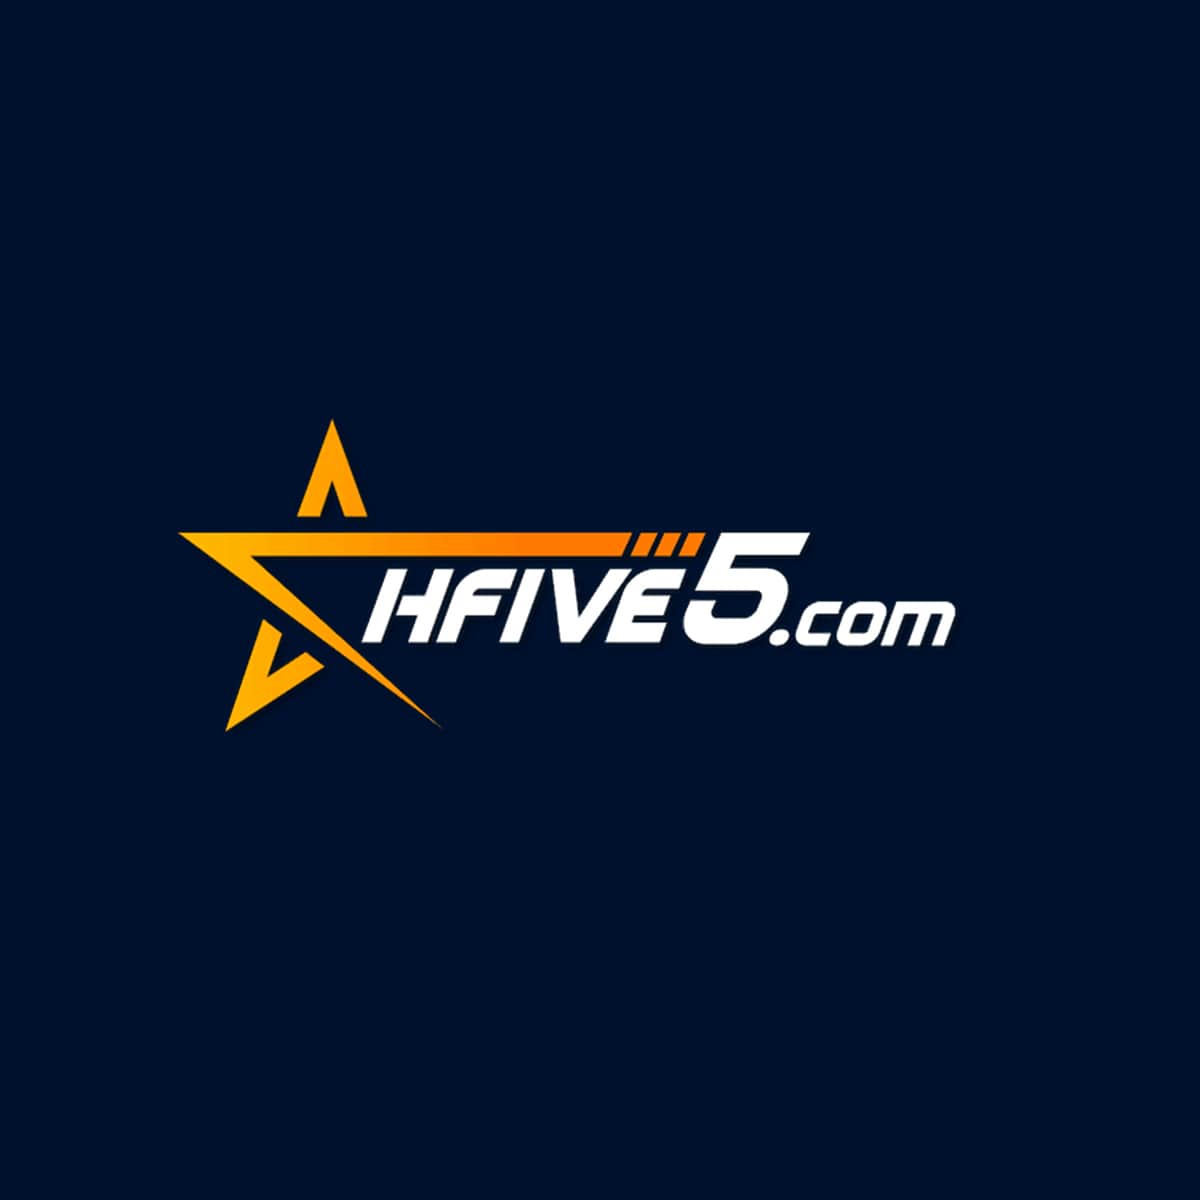 HFive Casino Logo